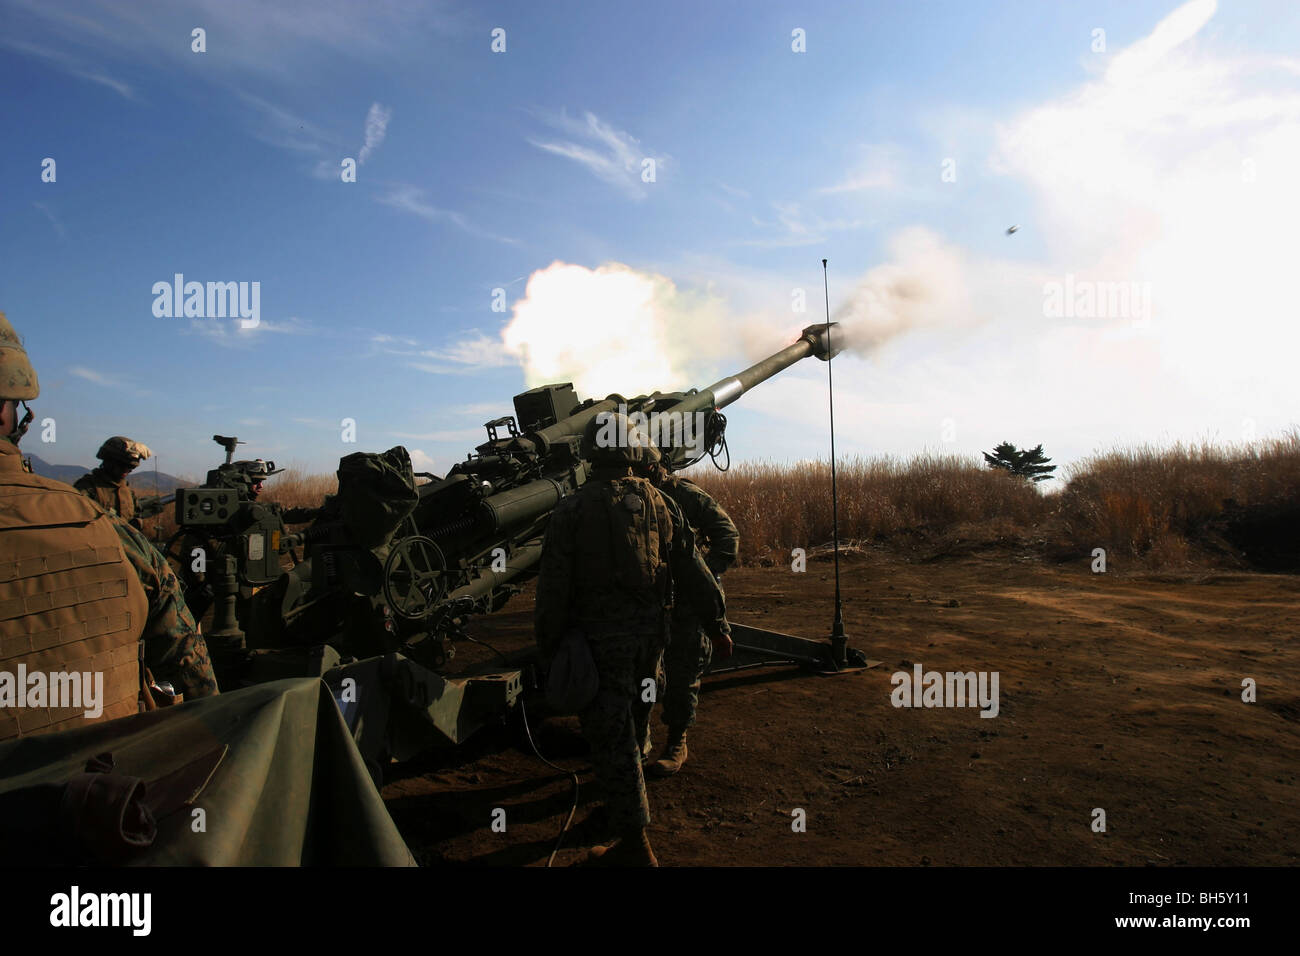 Artillerymen fire a 155mm round out of an M777 lightweight howitzer. Stock Photo